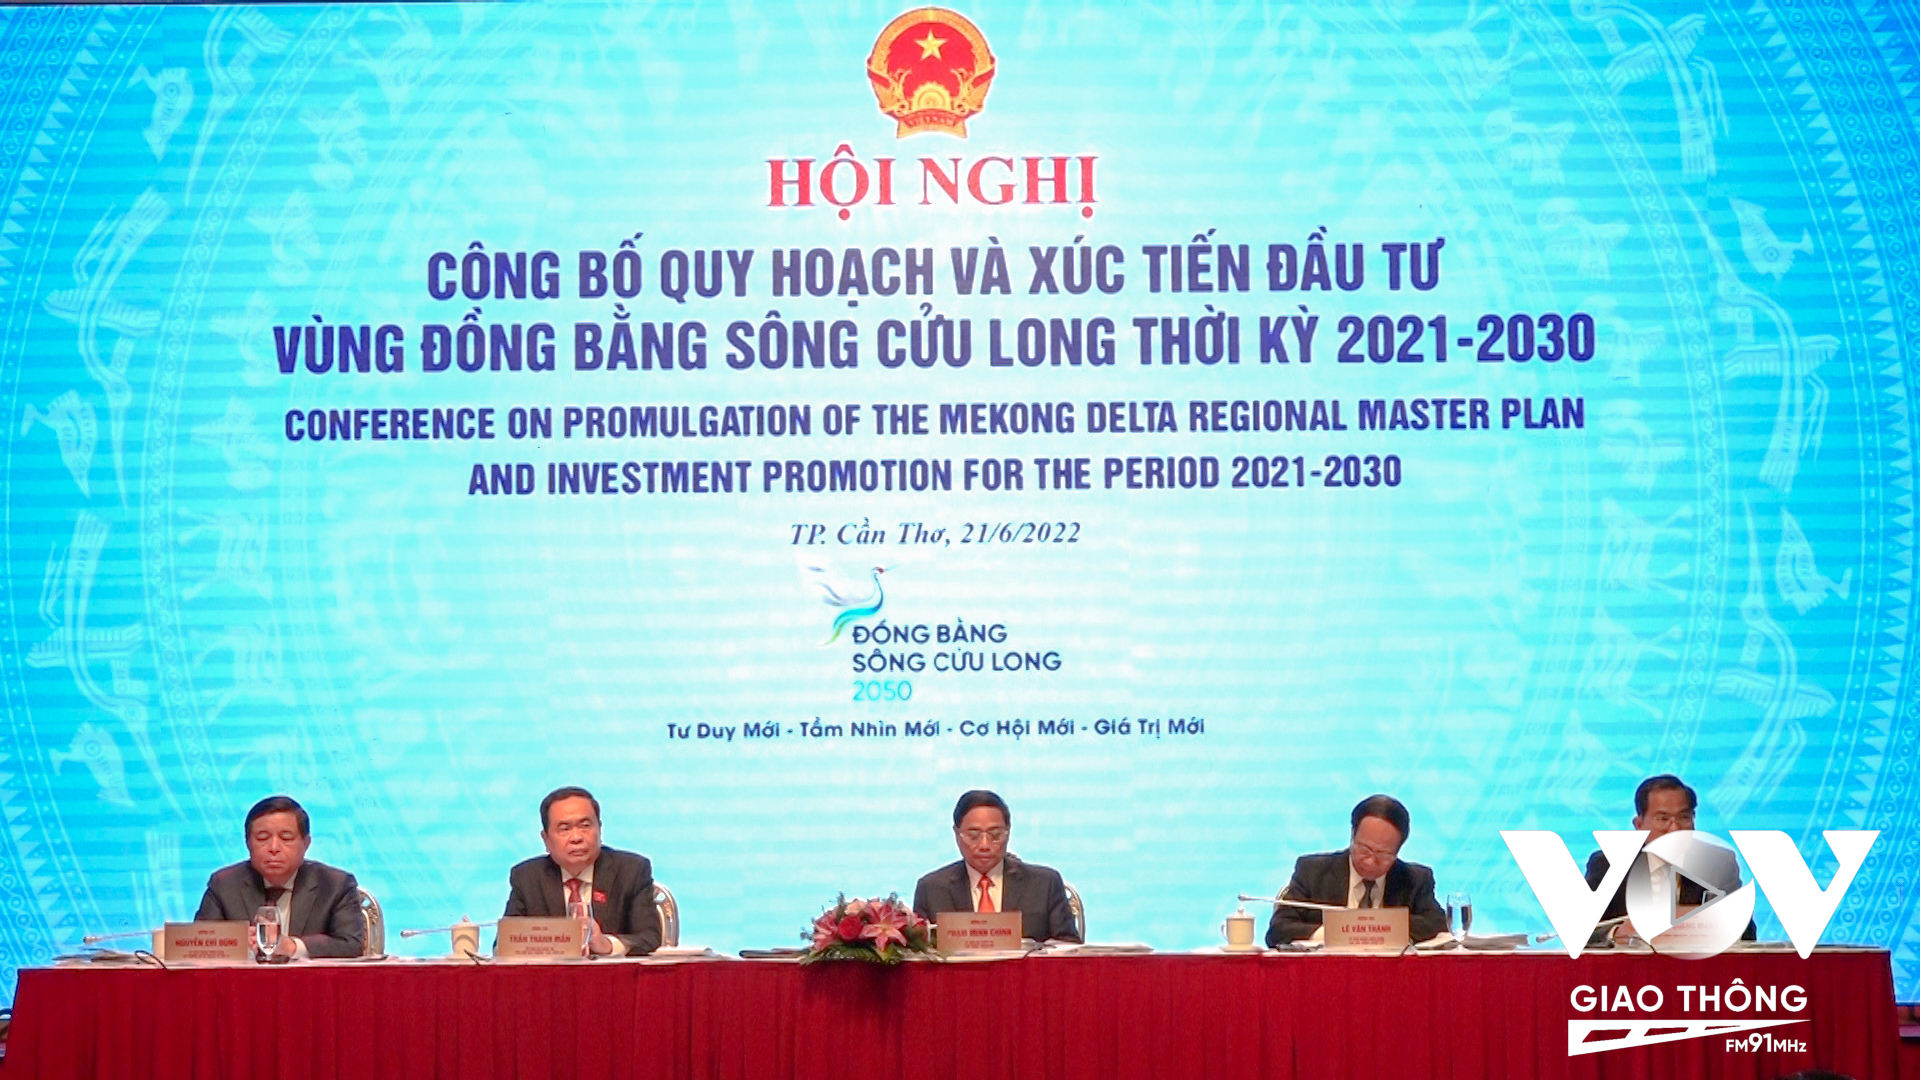 Hội nghị công bố quy hoạch và xúc tiến đầu tư vùng Đồng bằng sông Cửu Long thời kỳ 2021-2030 do Bộ Kế hoạch và Đầu tư tổ chức.